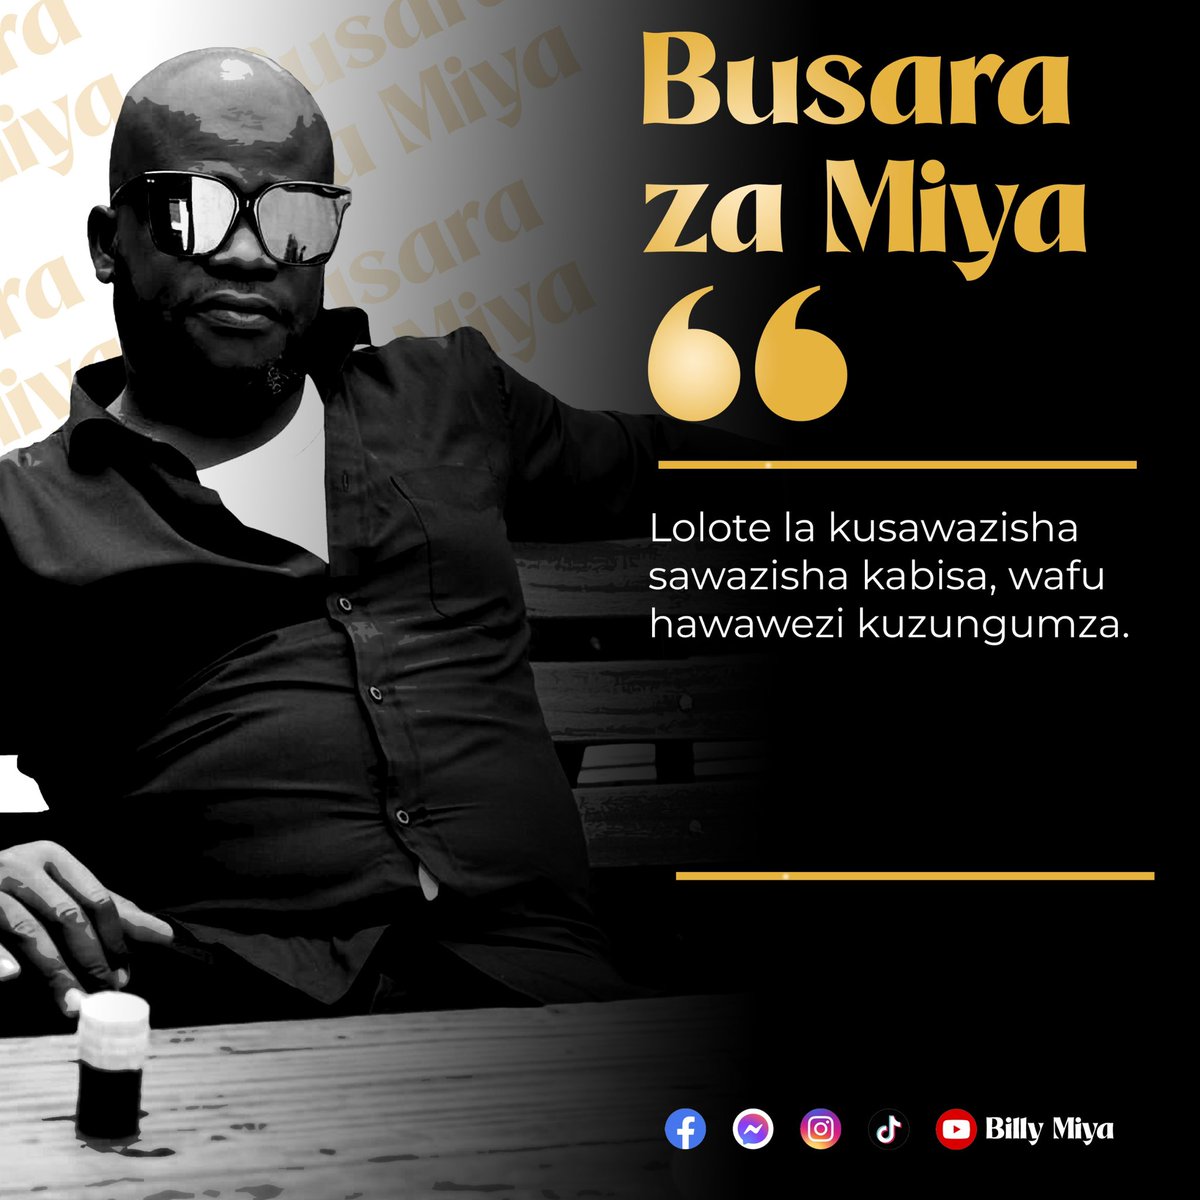 Akili kichwani mdau. #Falsafa #Busara #BrandMiya #BillyMiya